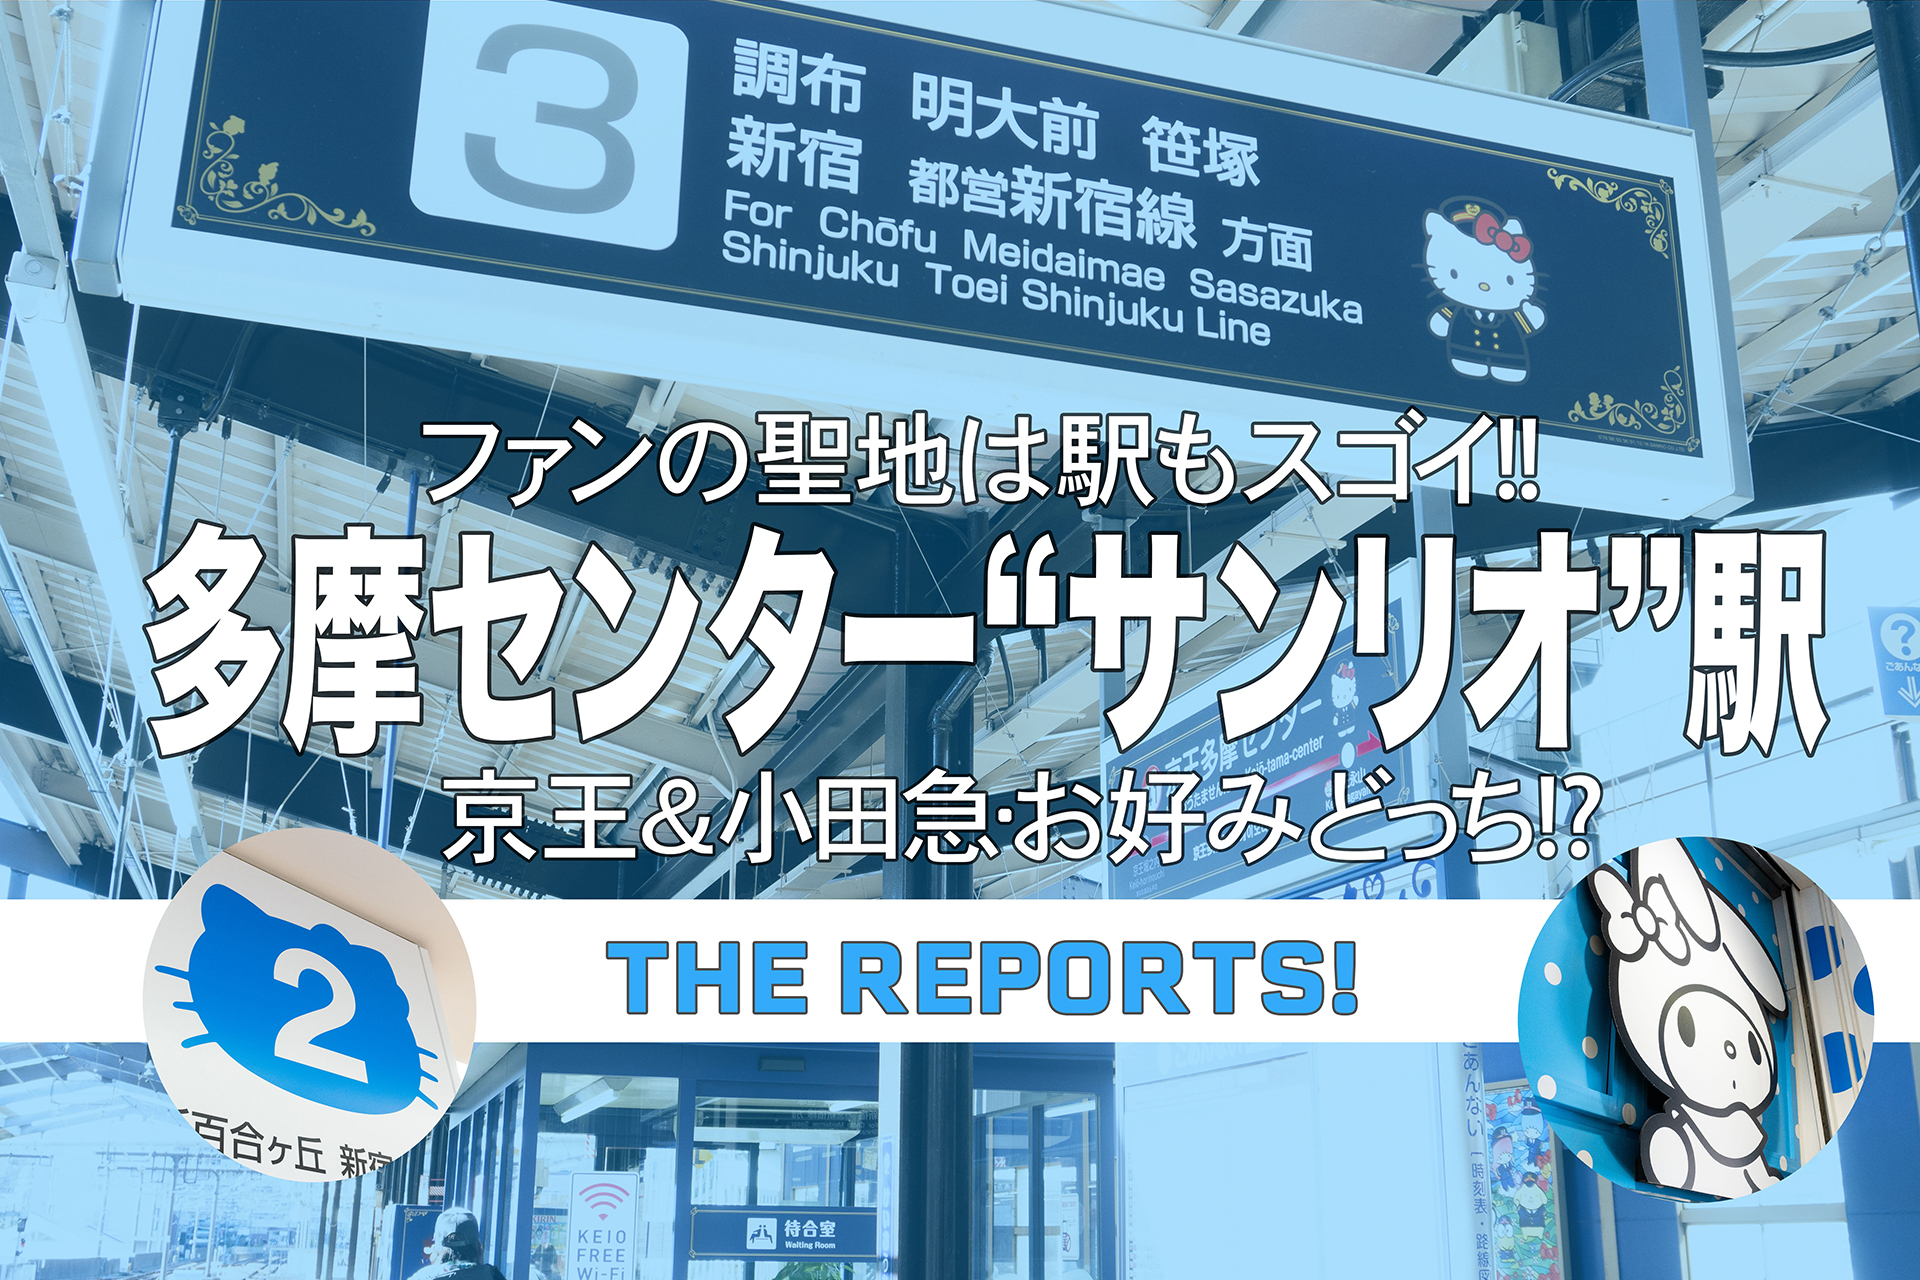 京王 小田急多摩センター駅がサンリオに 関東のお出かけ情報ならオソトイコ